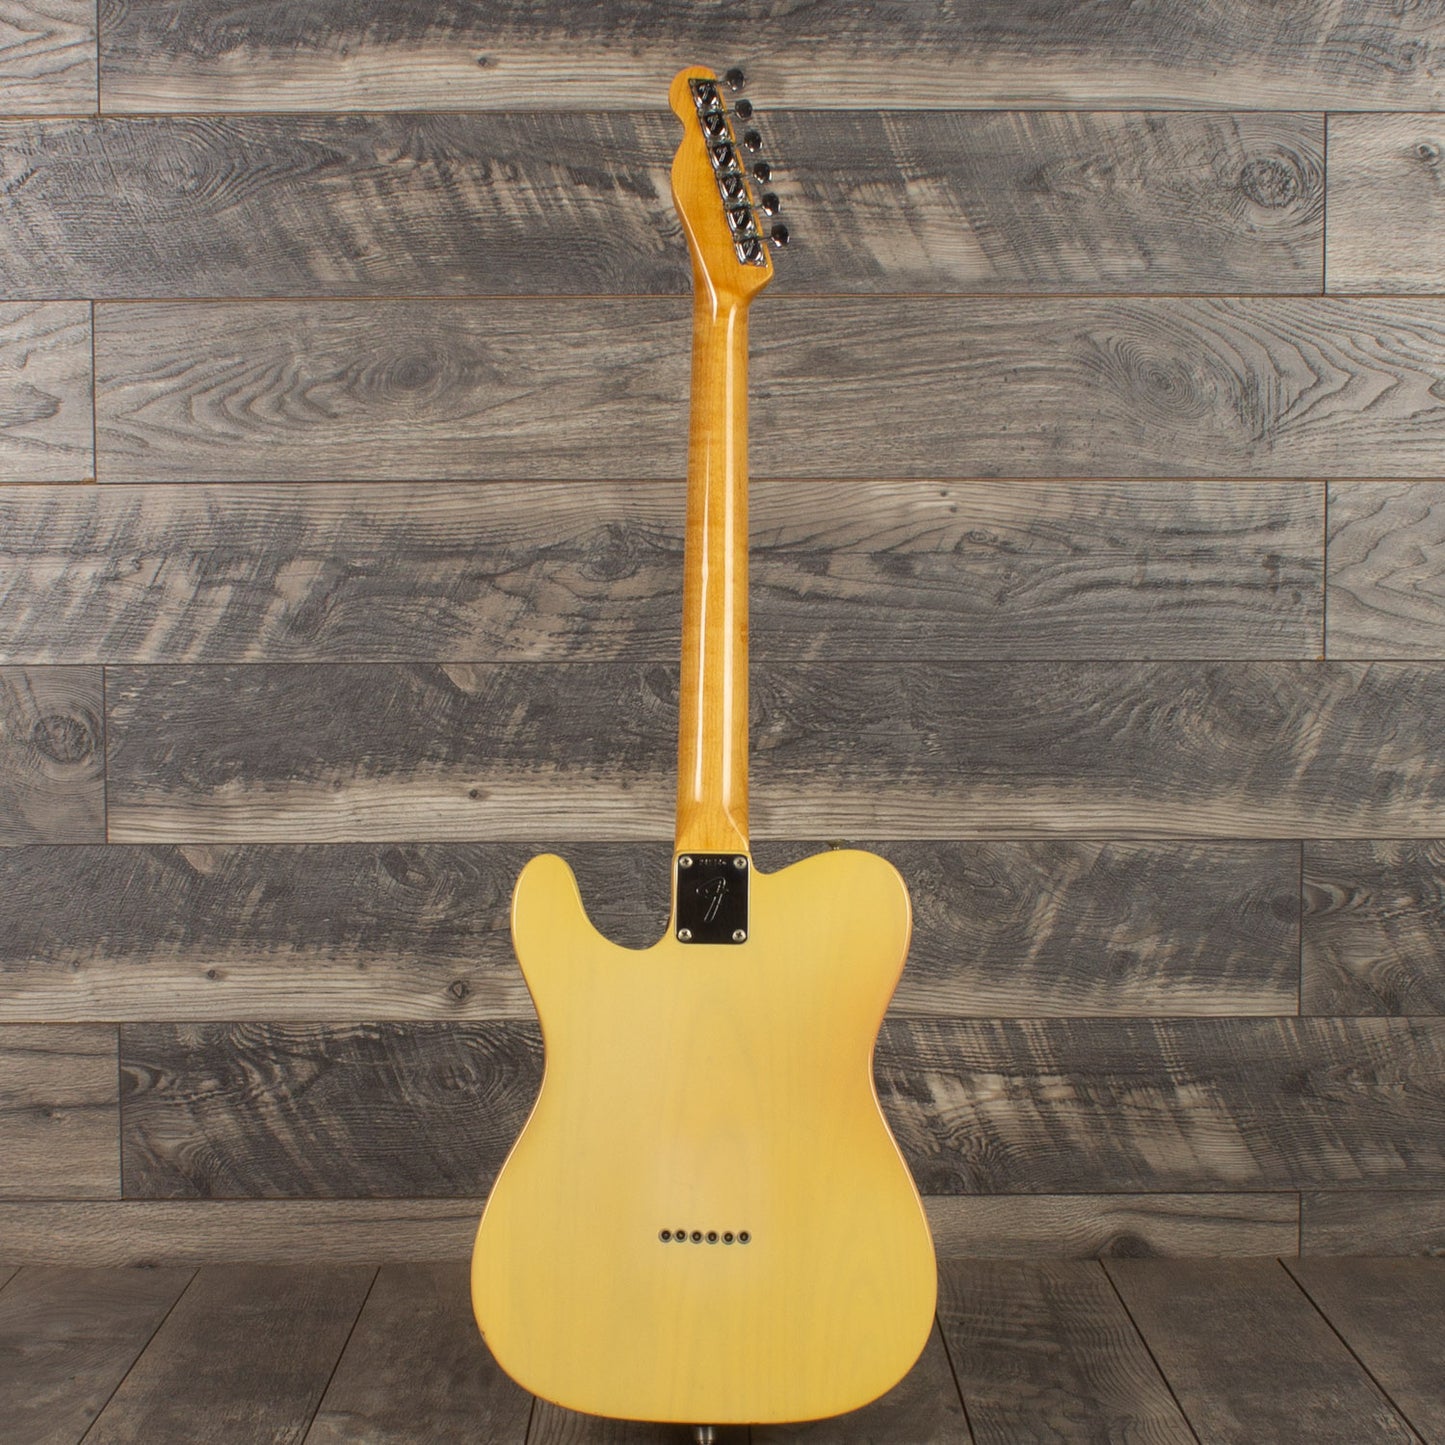 1968 Fender Telecaster-Maple cap